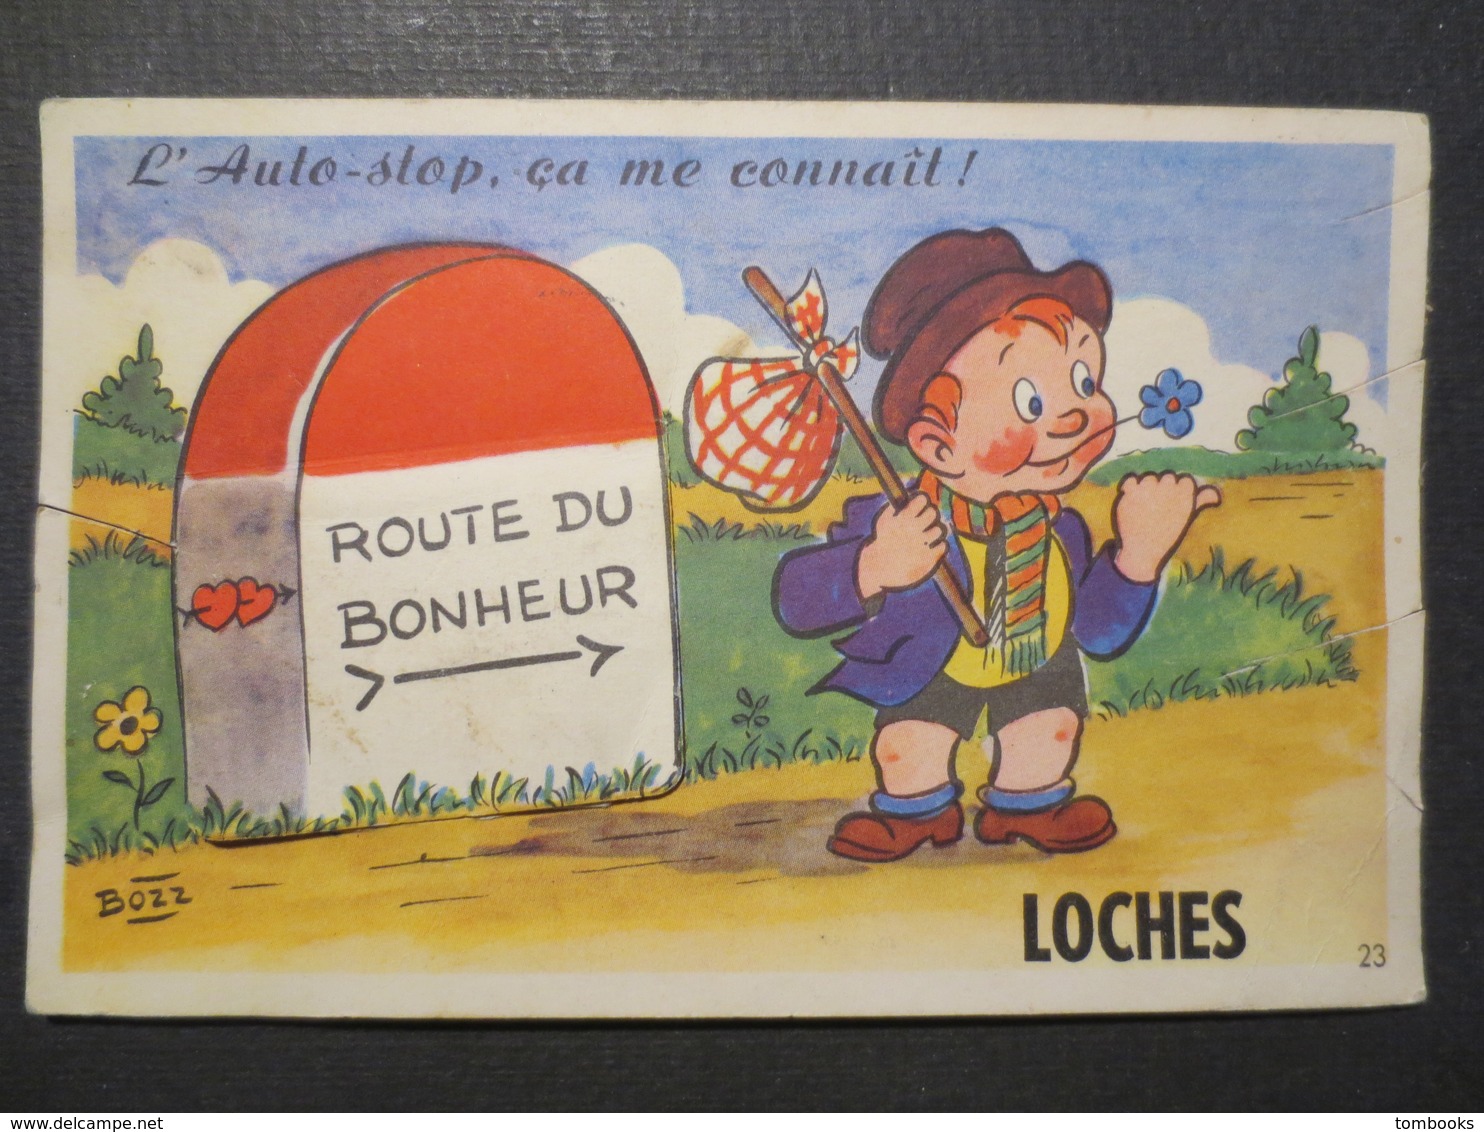 37 - Loches - Carte à Système Complète - L'Auto - Stop , ça Me Connaît - Bozz N° 23 - CAP - 1951 - - Loches